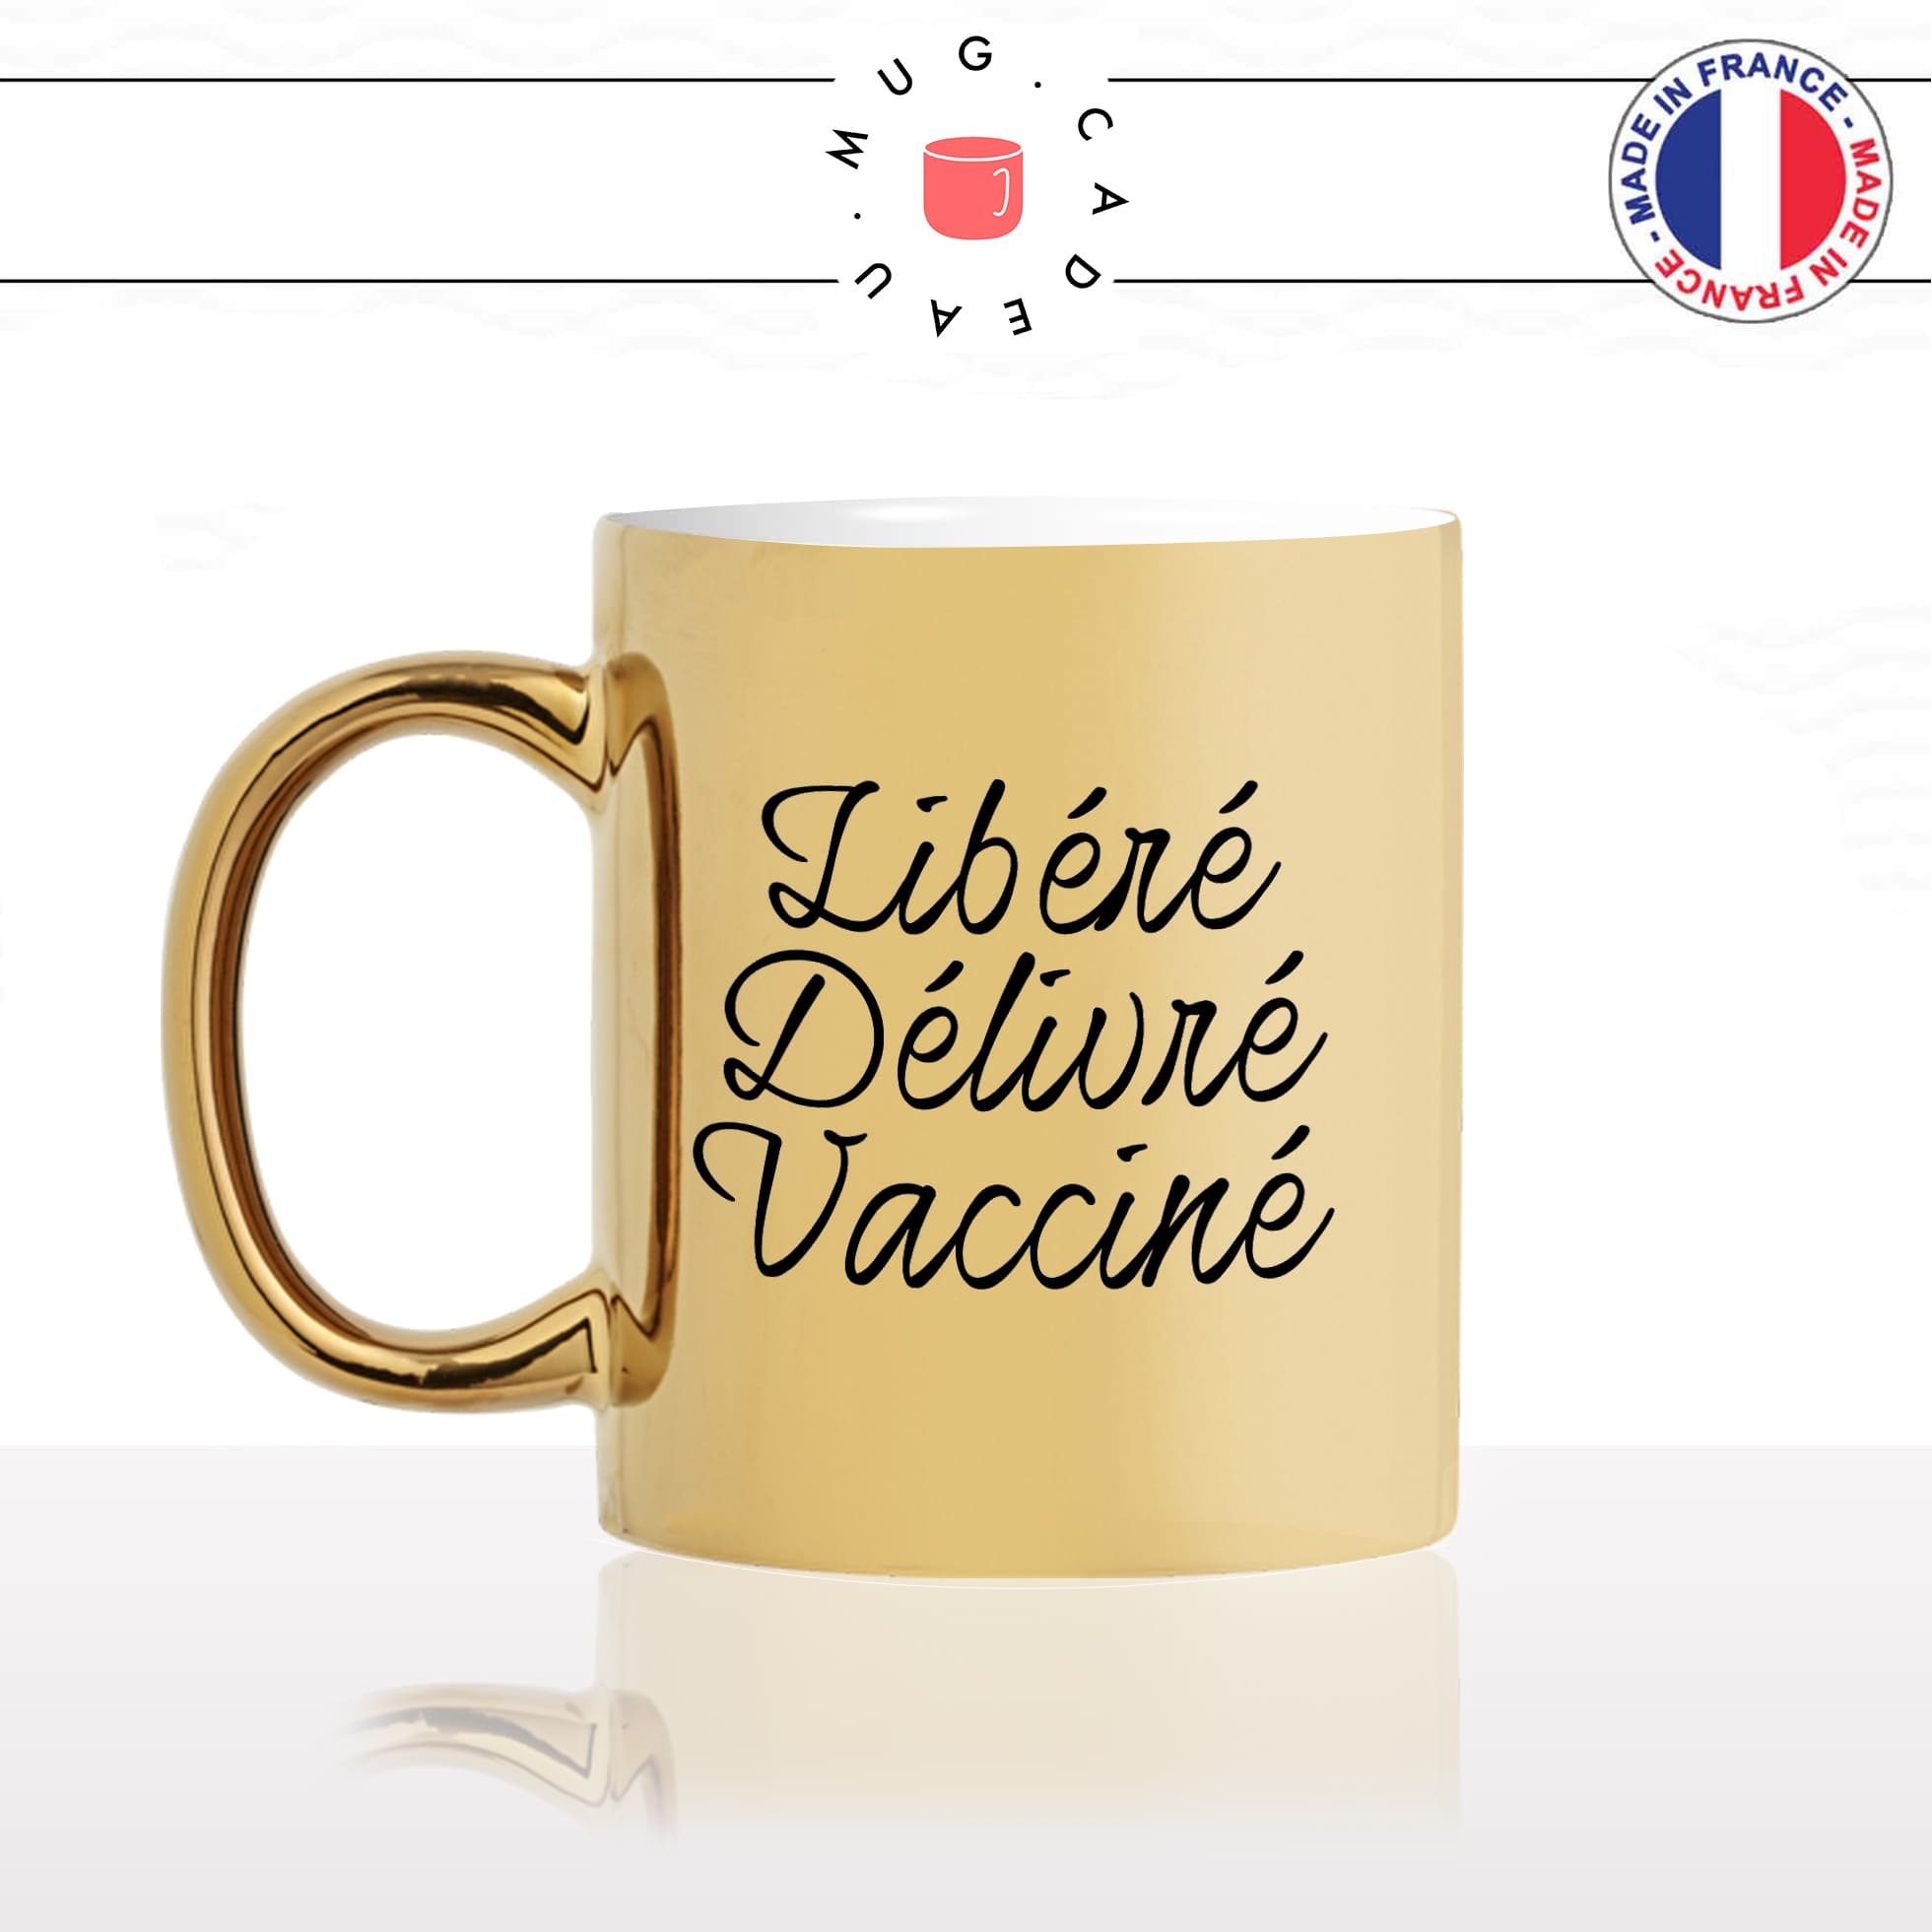 mug-tasse-or-doré-gold-unique-libéré-délivré-vacciné-vaccination-covid-homme-femme-parodie-humour-fun-cool-idée-cadeau-original-personnalisé